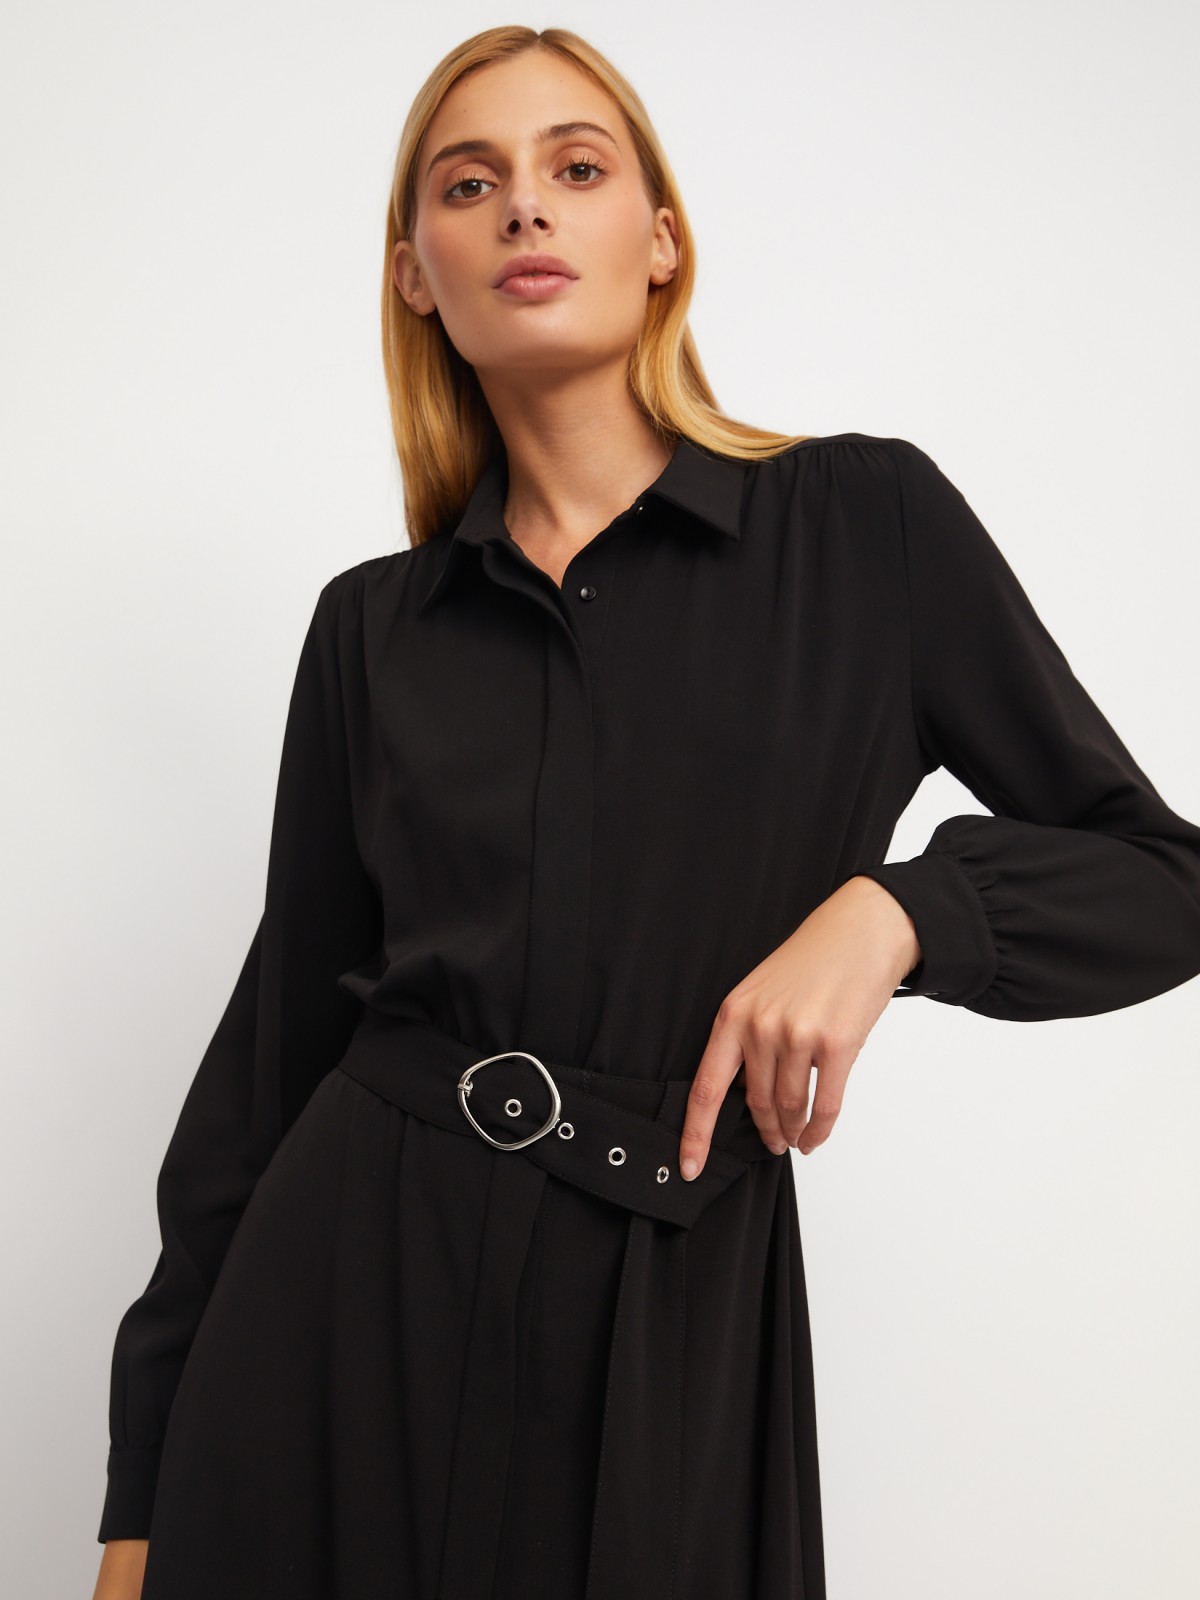 Платье-рубашка длины миди с воротником и акцентном на талии zolla 024118208223, цвет черный, размер XS - фото 5